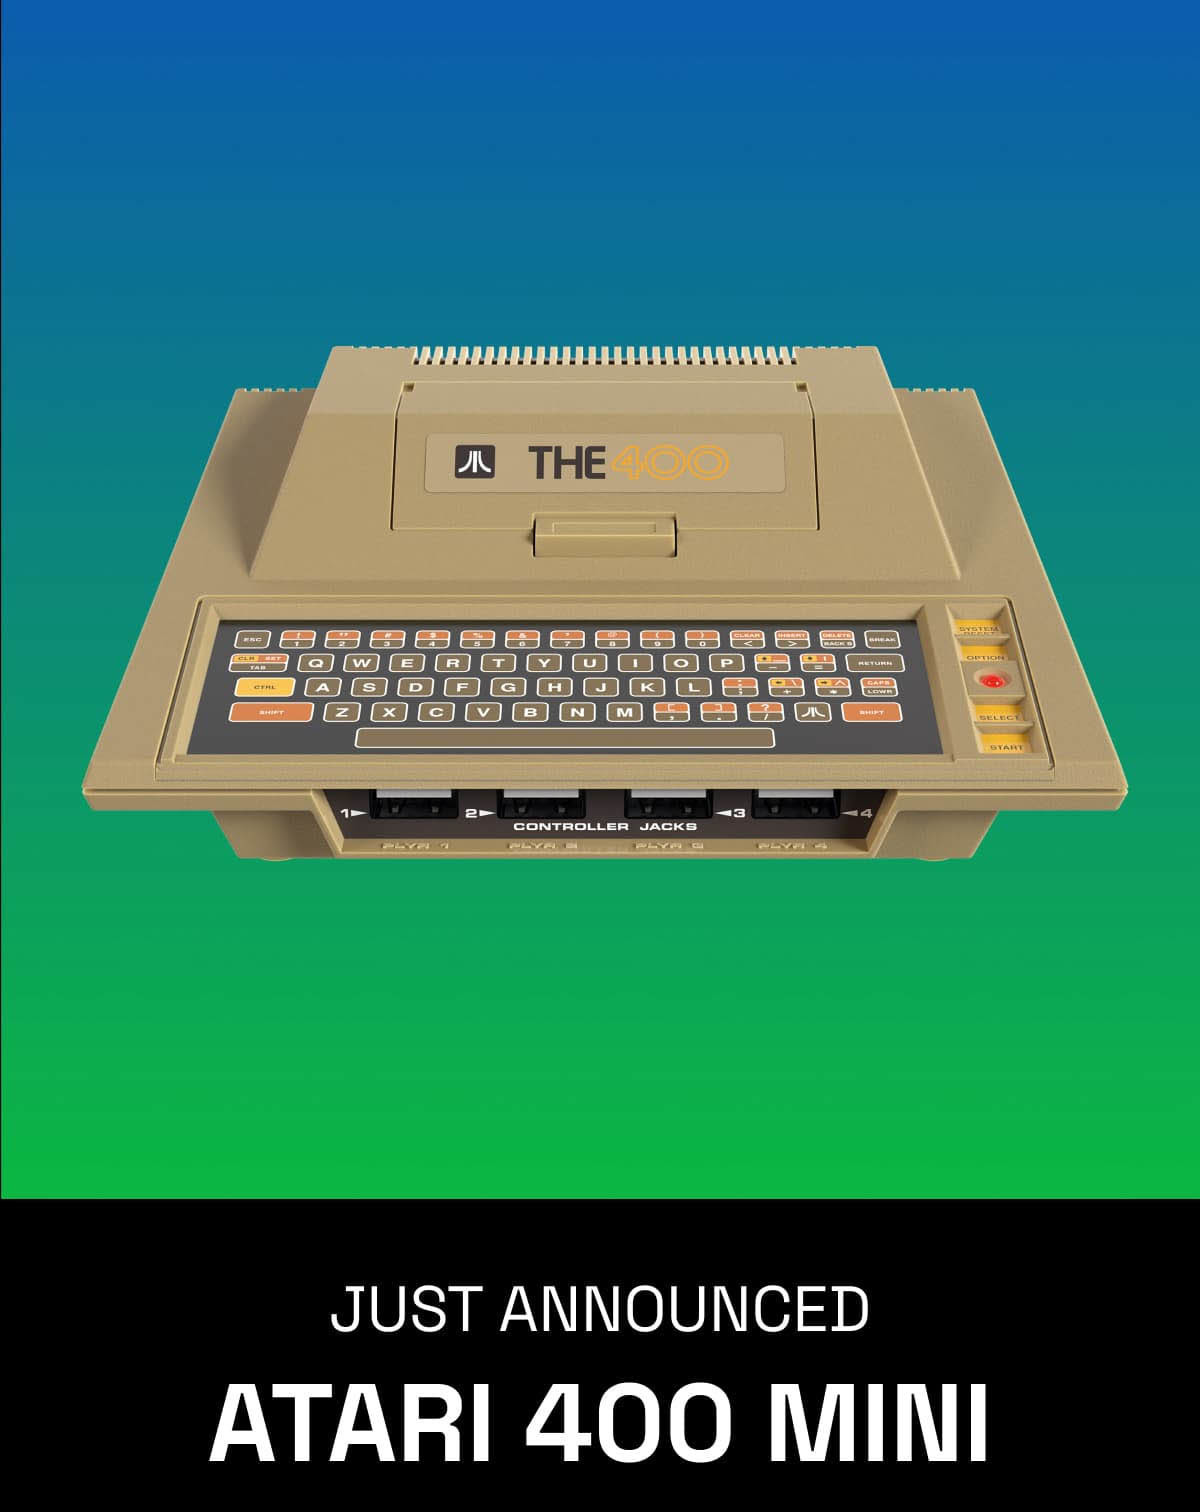 【主机游戏】经典《Atari 400 Mini》复刻主机公开 预定三月北美发售